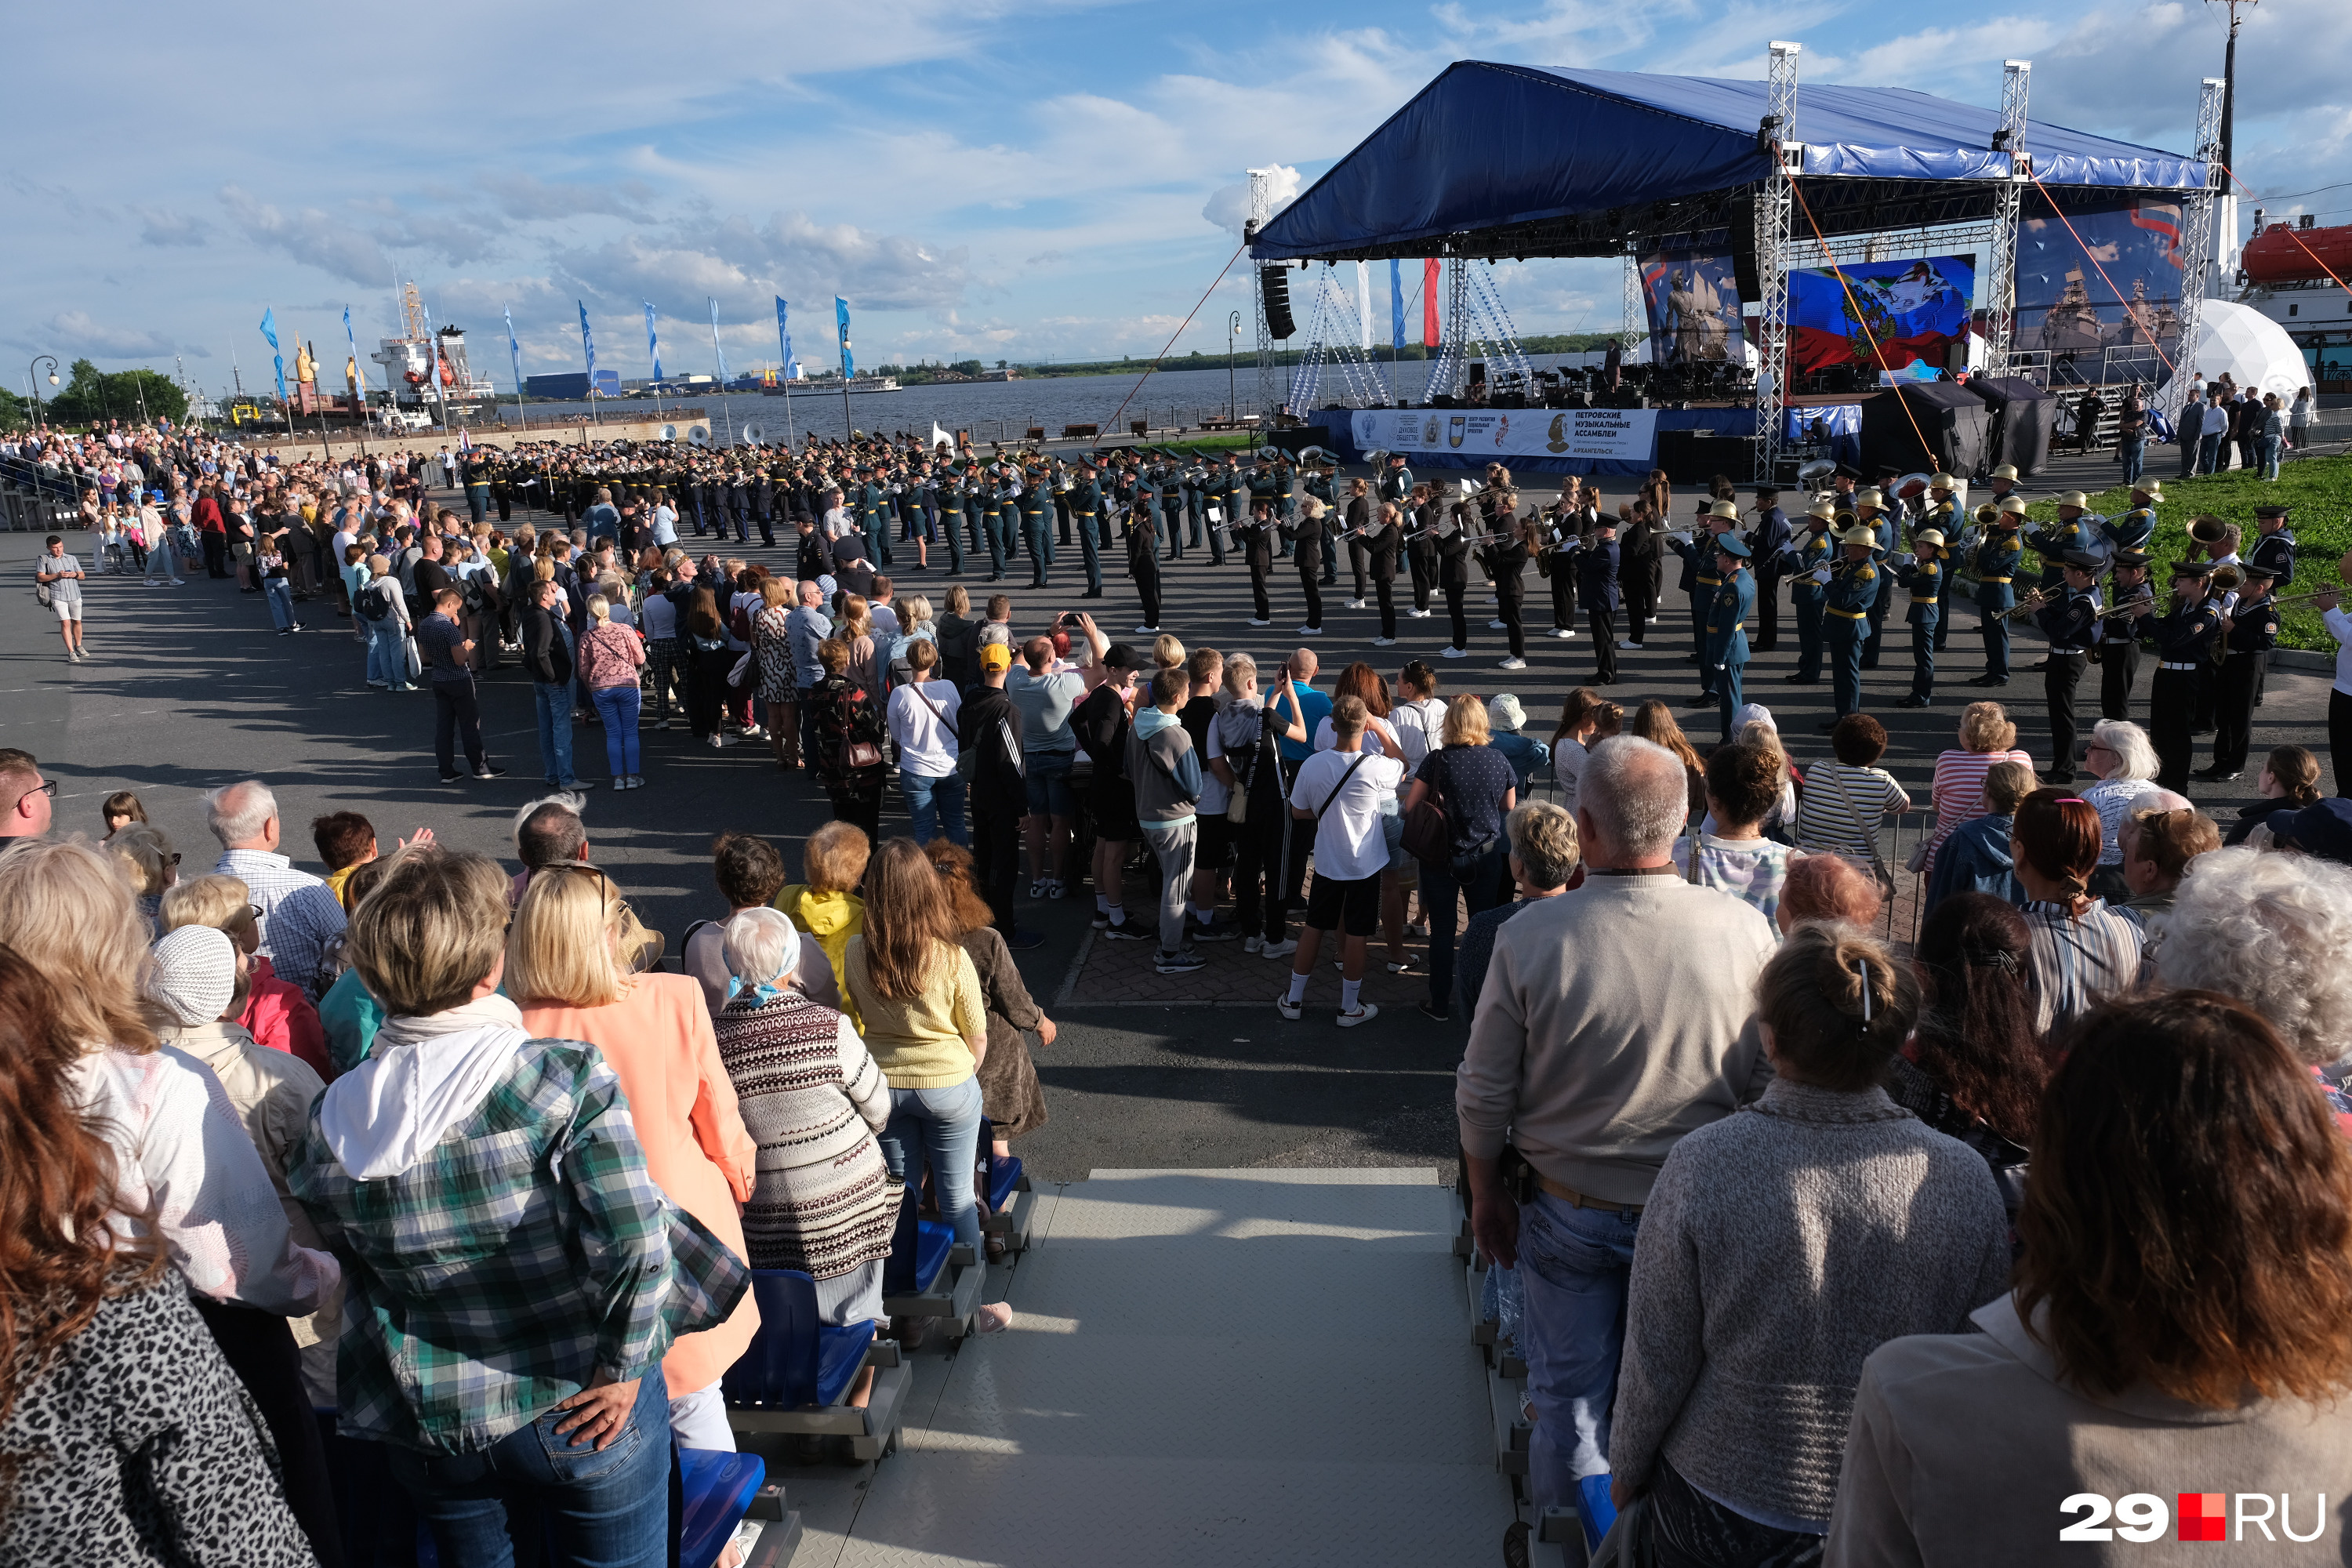 Открытие фестиваля на Красной пристани: в начале артистов примерно столько же, сколько зрителей